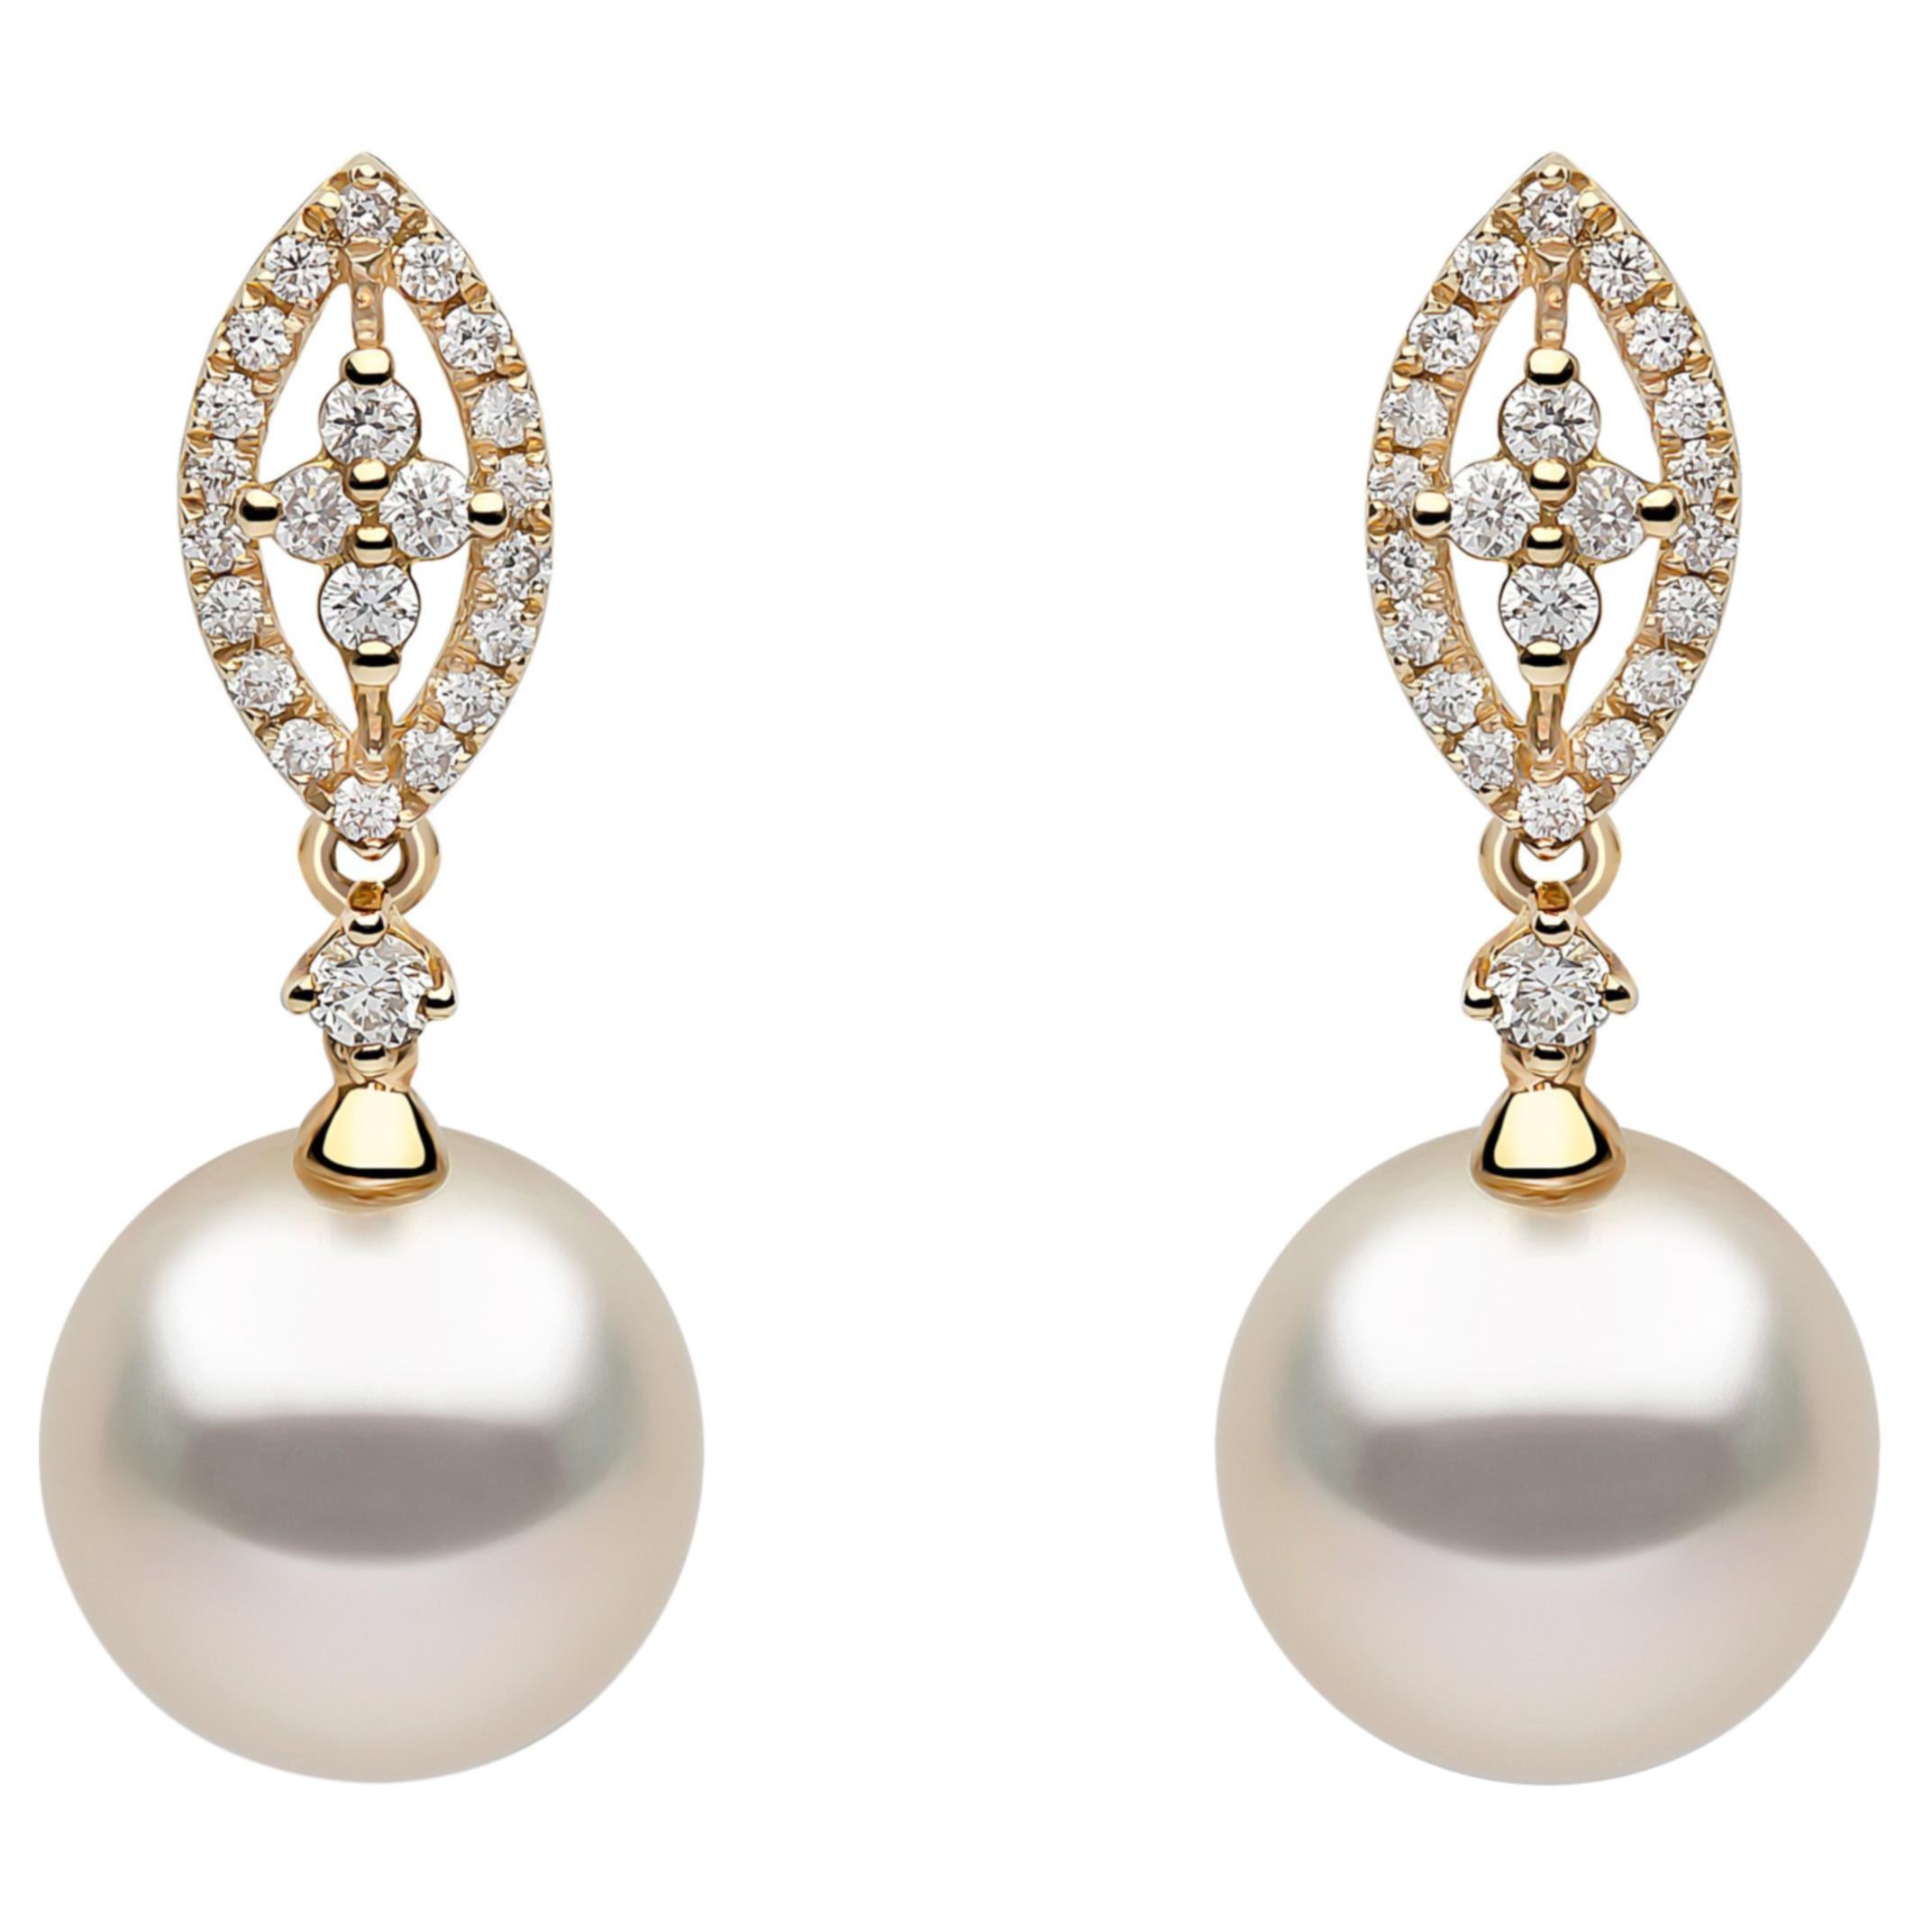 Yoko London South Sea Pearl and Diamond Earrings, in 18 Karat Yellow Gold